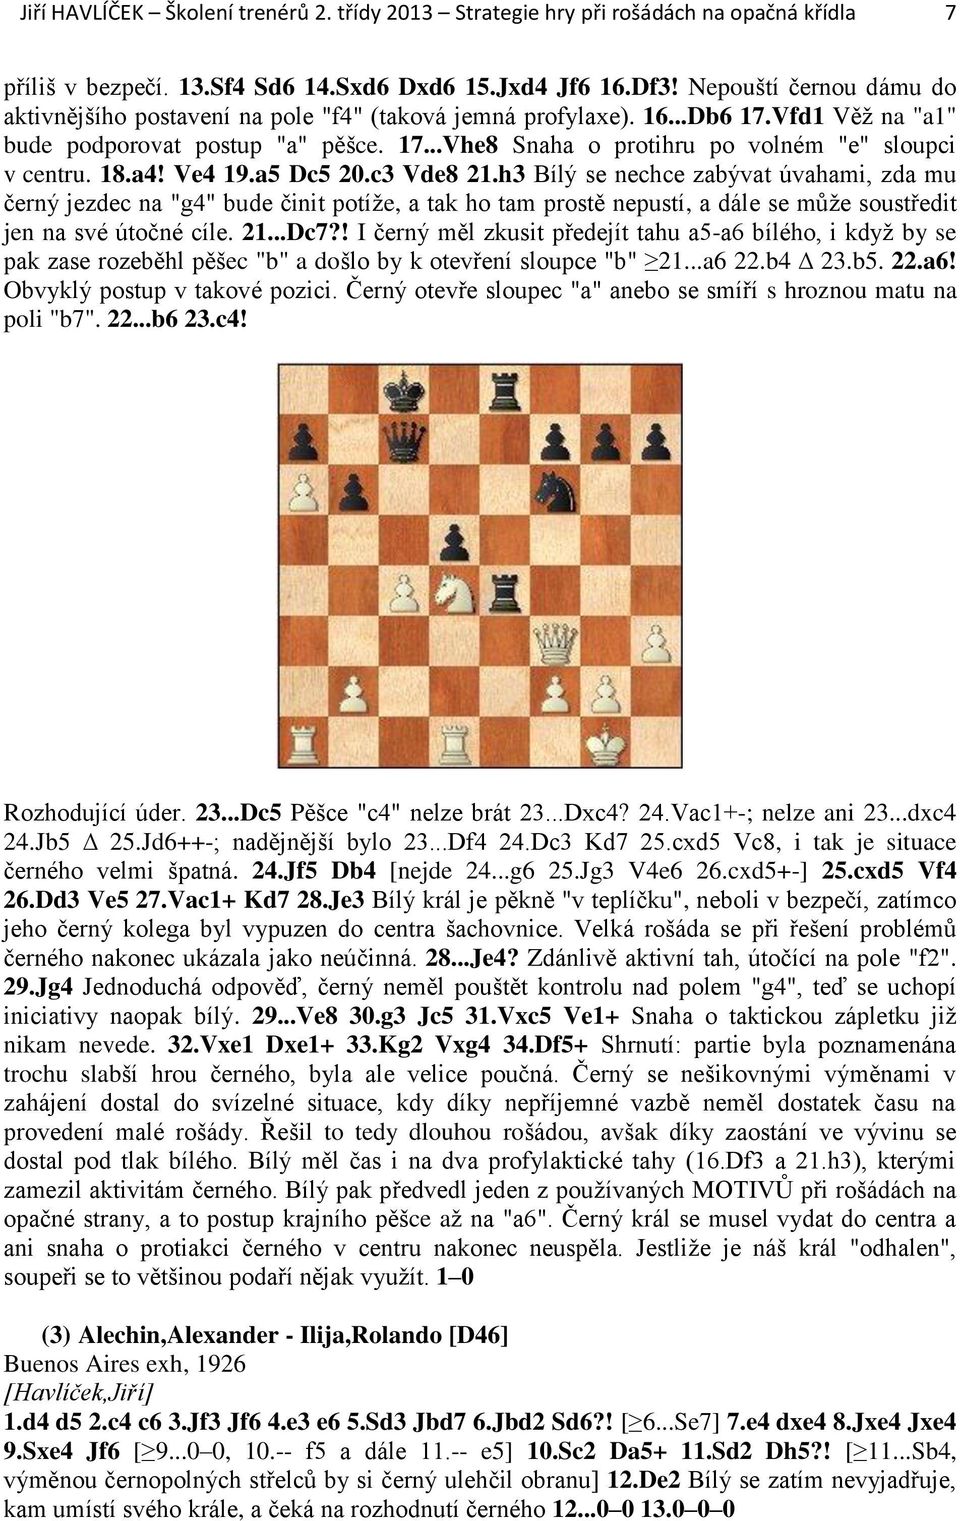 18.a4! Ve4 19.a5 Dc5 20.c3 Vde8 21.h3 Bílý se nechce zabývat úvahami, zda mu černý jezdec na "g4" bude činit potíže, a tak ho tam prostě nepustí, a dále se může soustředit jen na své útočné cíle. 21...Dc7?